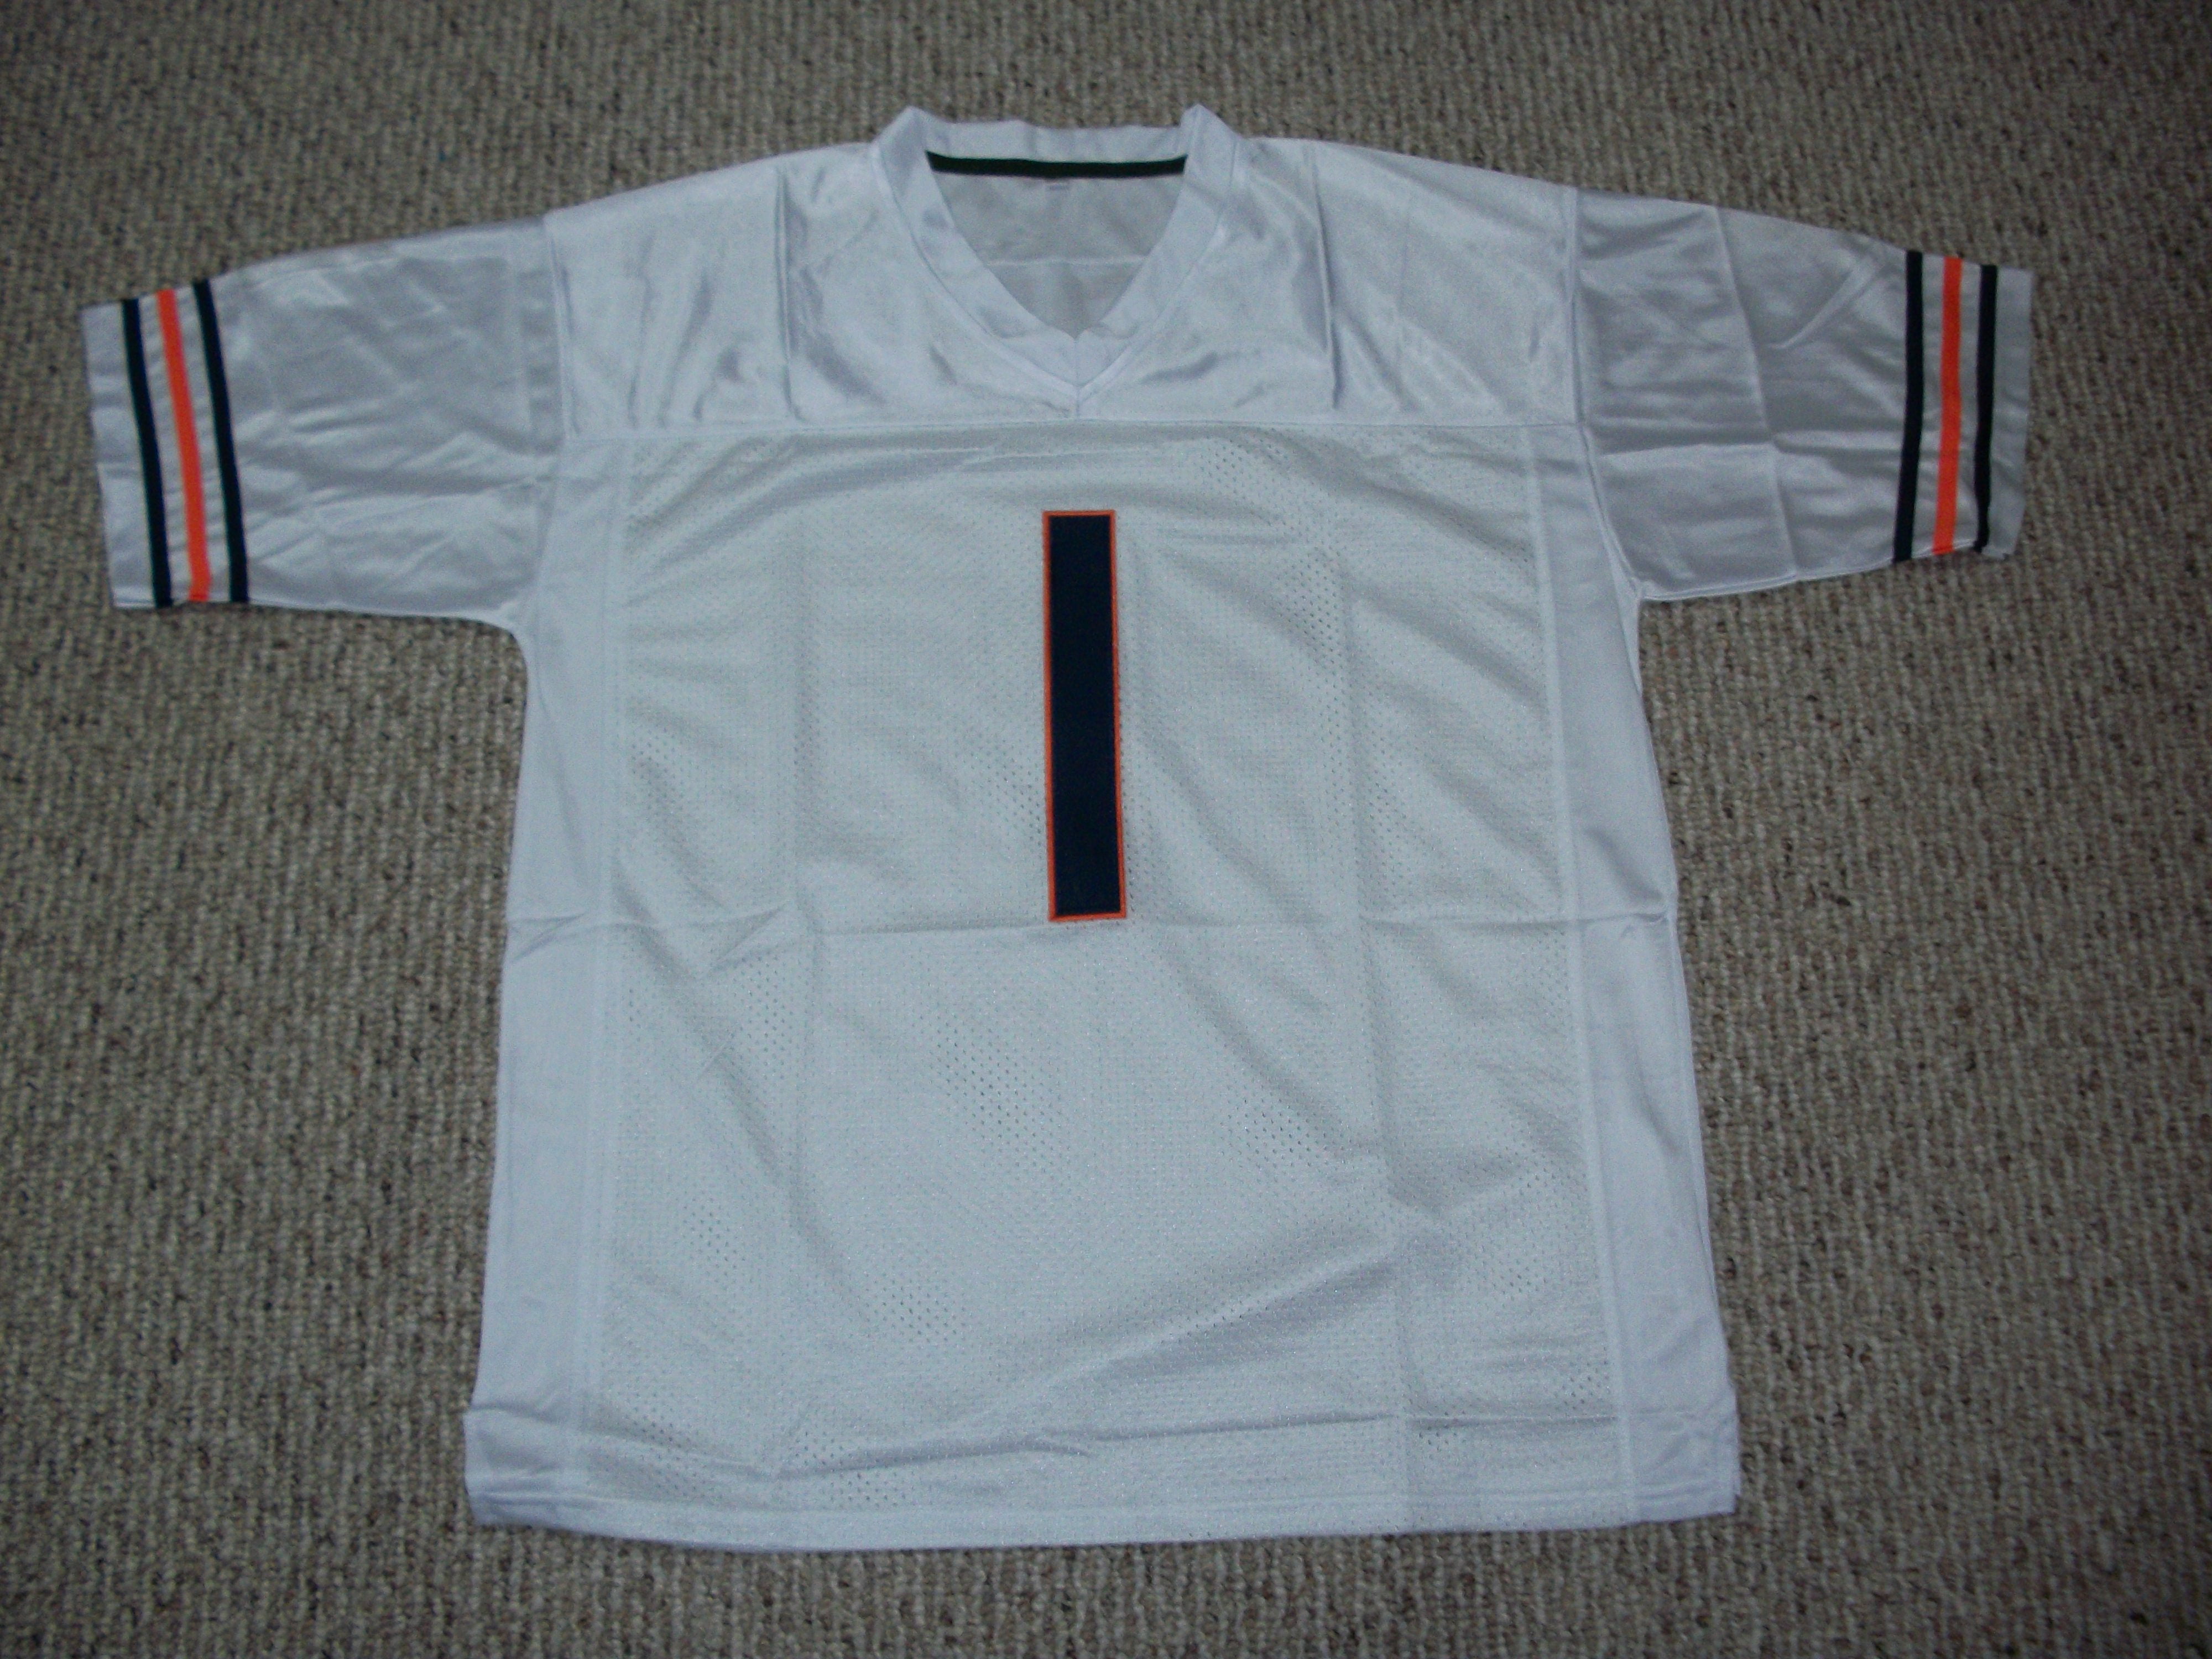 white fields jersey